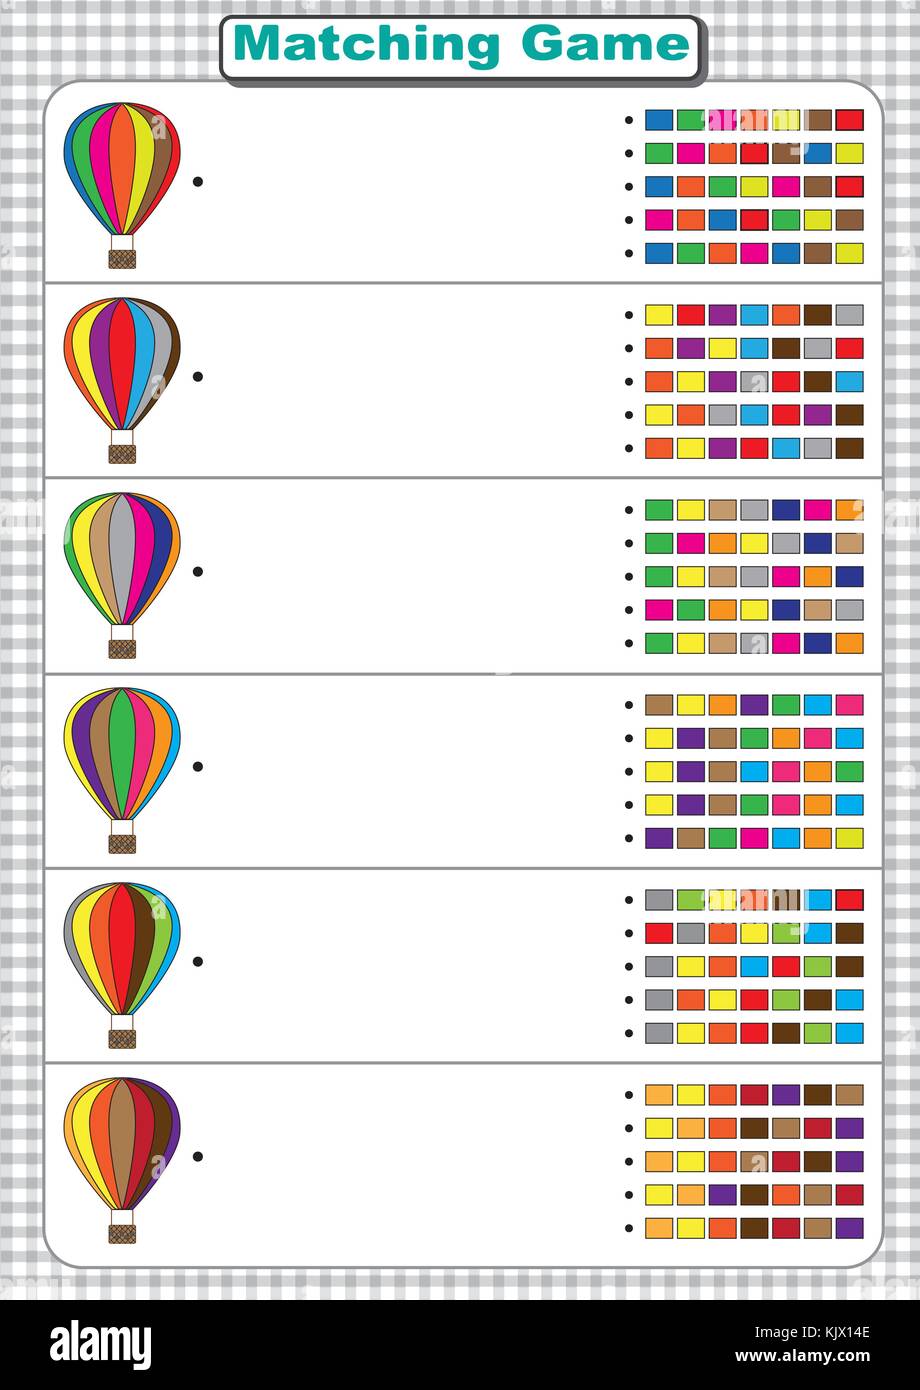 Die Reihenfolge der Farben der Luft Ballon finden. visuelle Wahrnehmung Arbeitsblatt für Kinder Stock Vektor